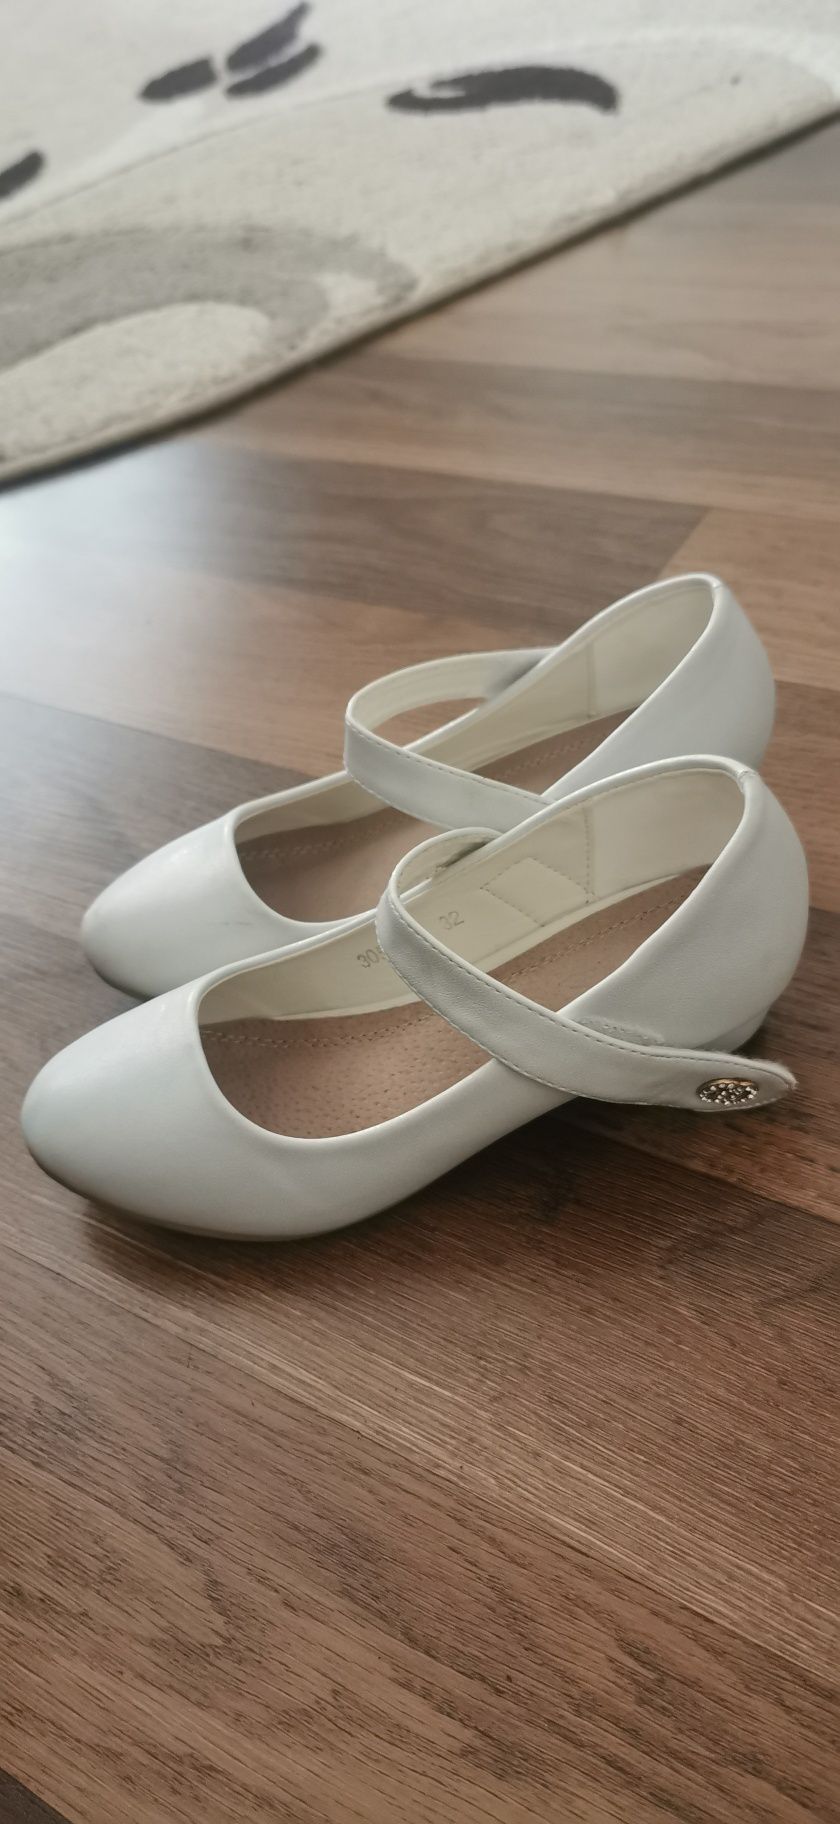 Pantofiori albi fete